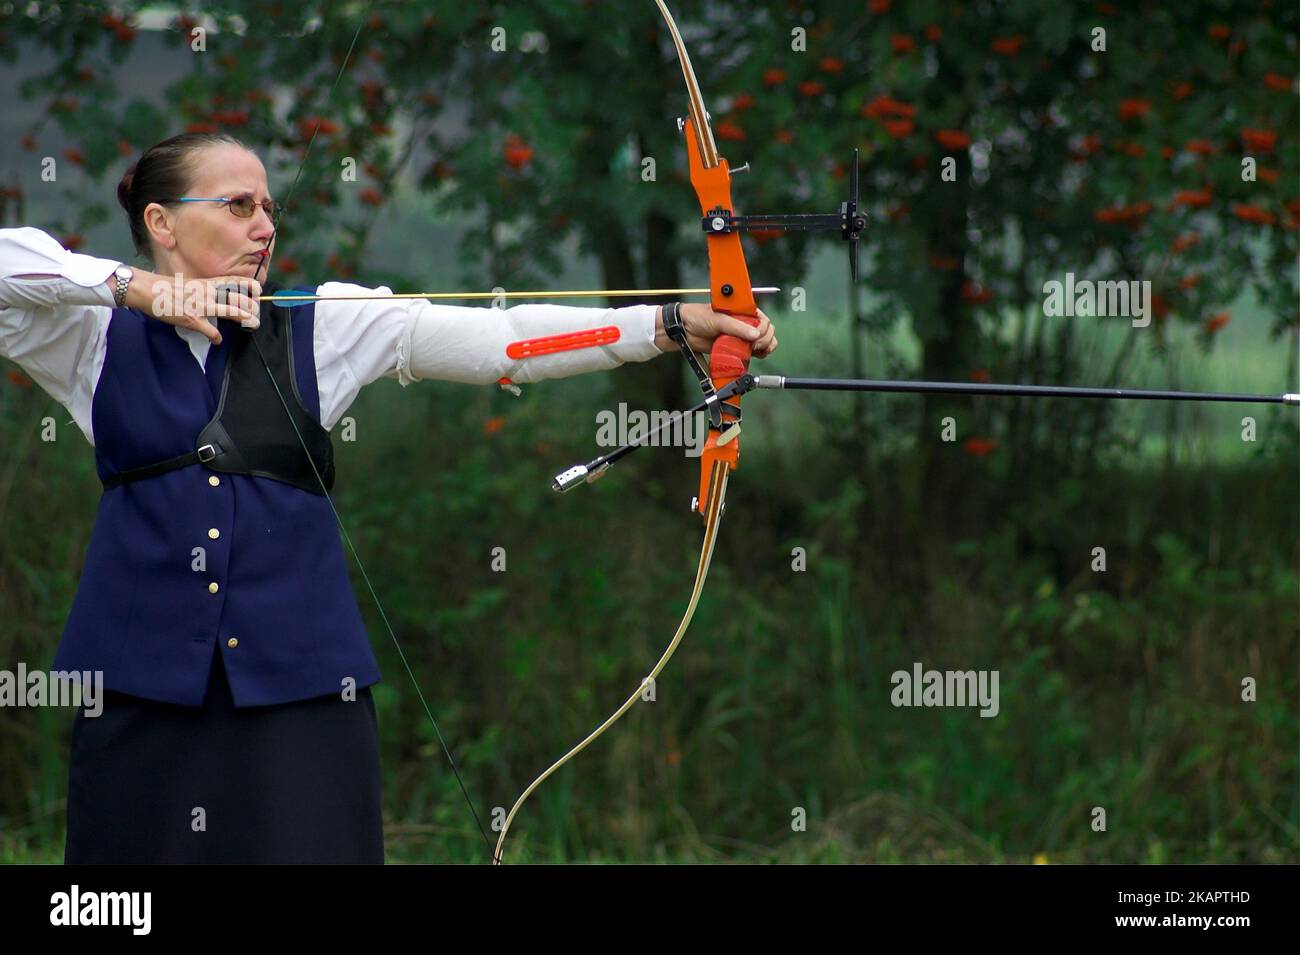 Heeswijk, Niederlande, Europäische Gemeinschaft Historischer Schützen; Europäischer Verband historischer Riflemen; Frau schießt einen Bogen Stockfoto